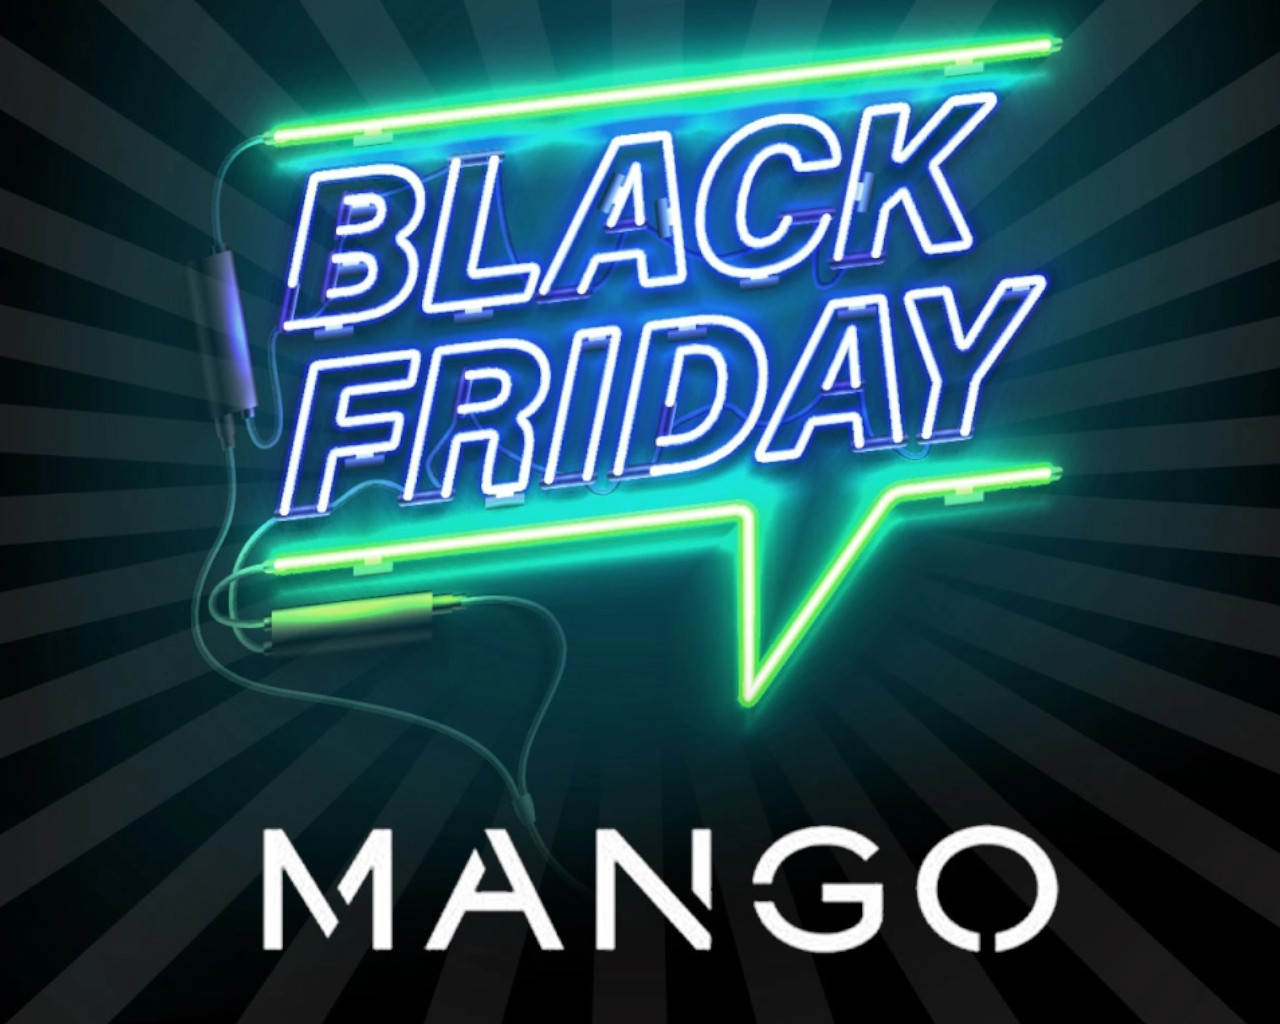 black friday mango,black friday mango 2019,black friday mango 2020,black friday mango france,black friday mango sale,black friday mango 2018,black friday mango,black friday mango outlet,black friday mango online,black friday mango man